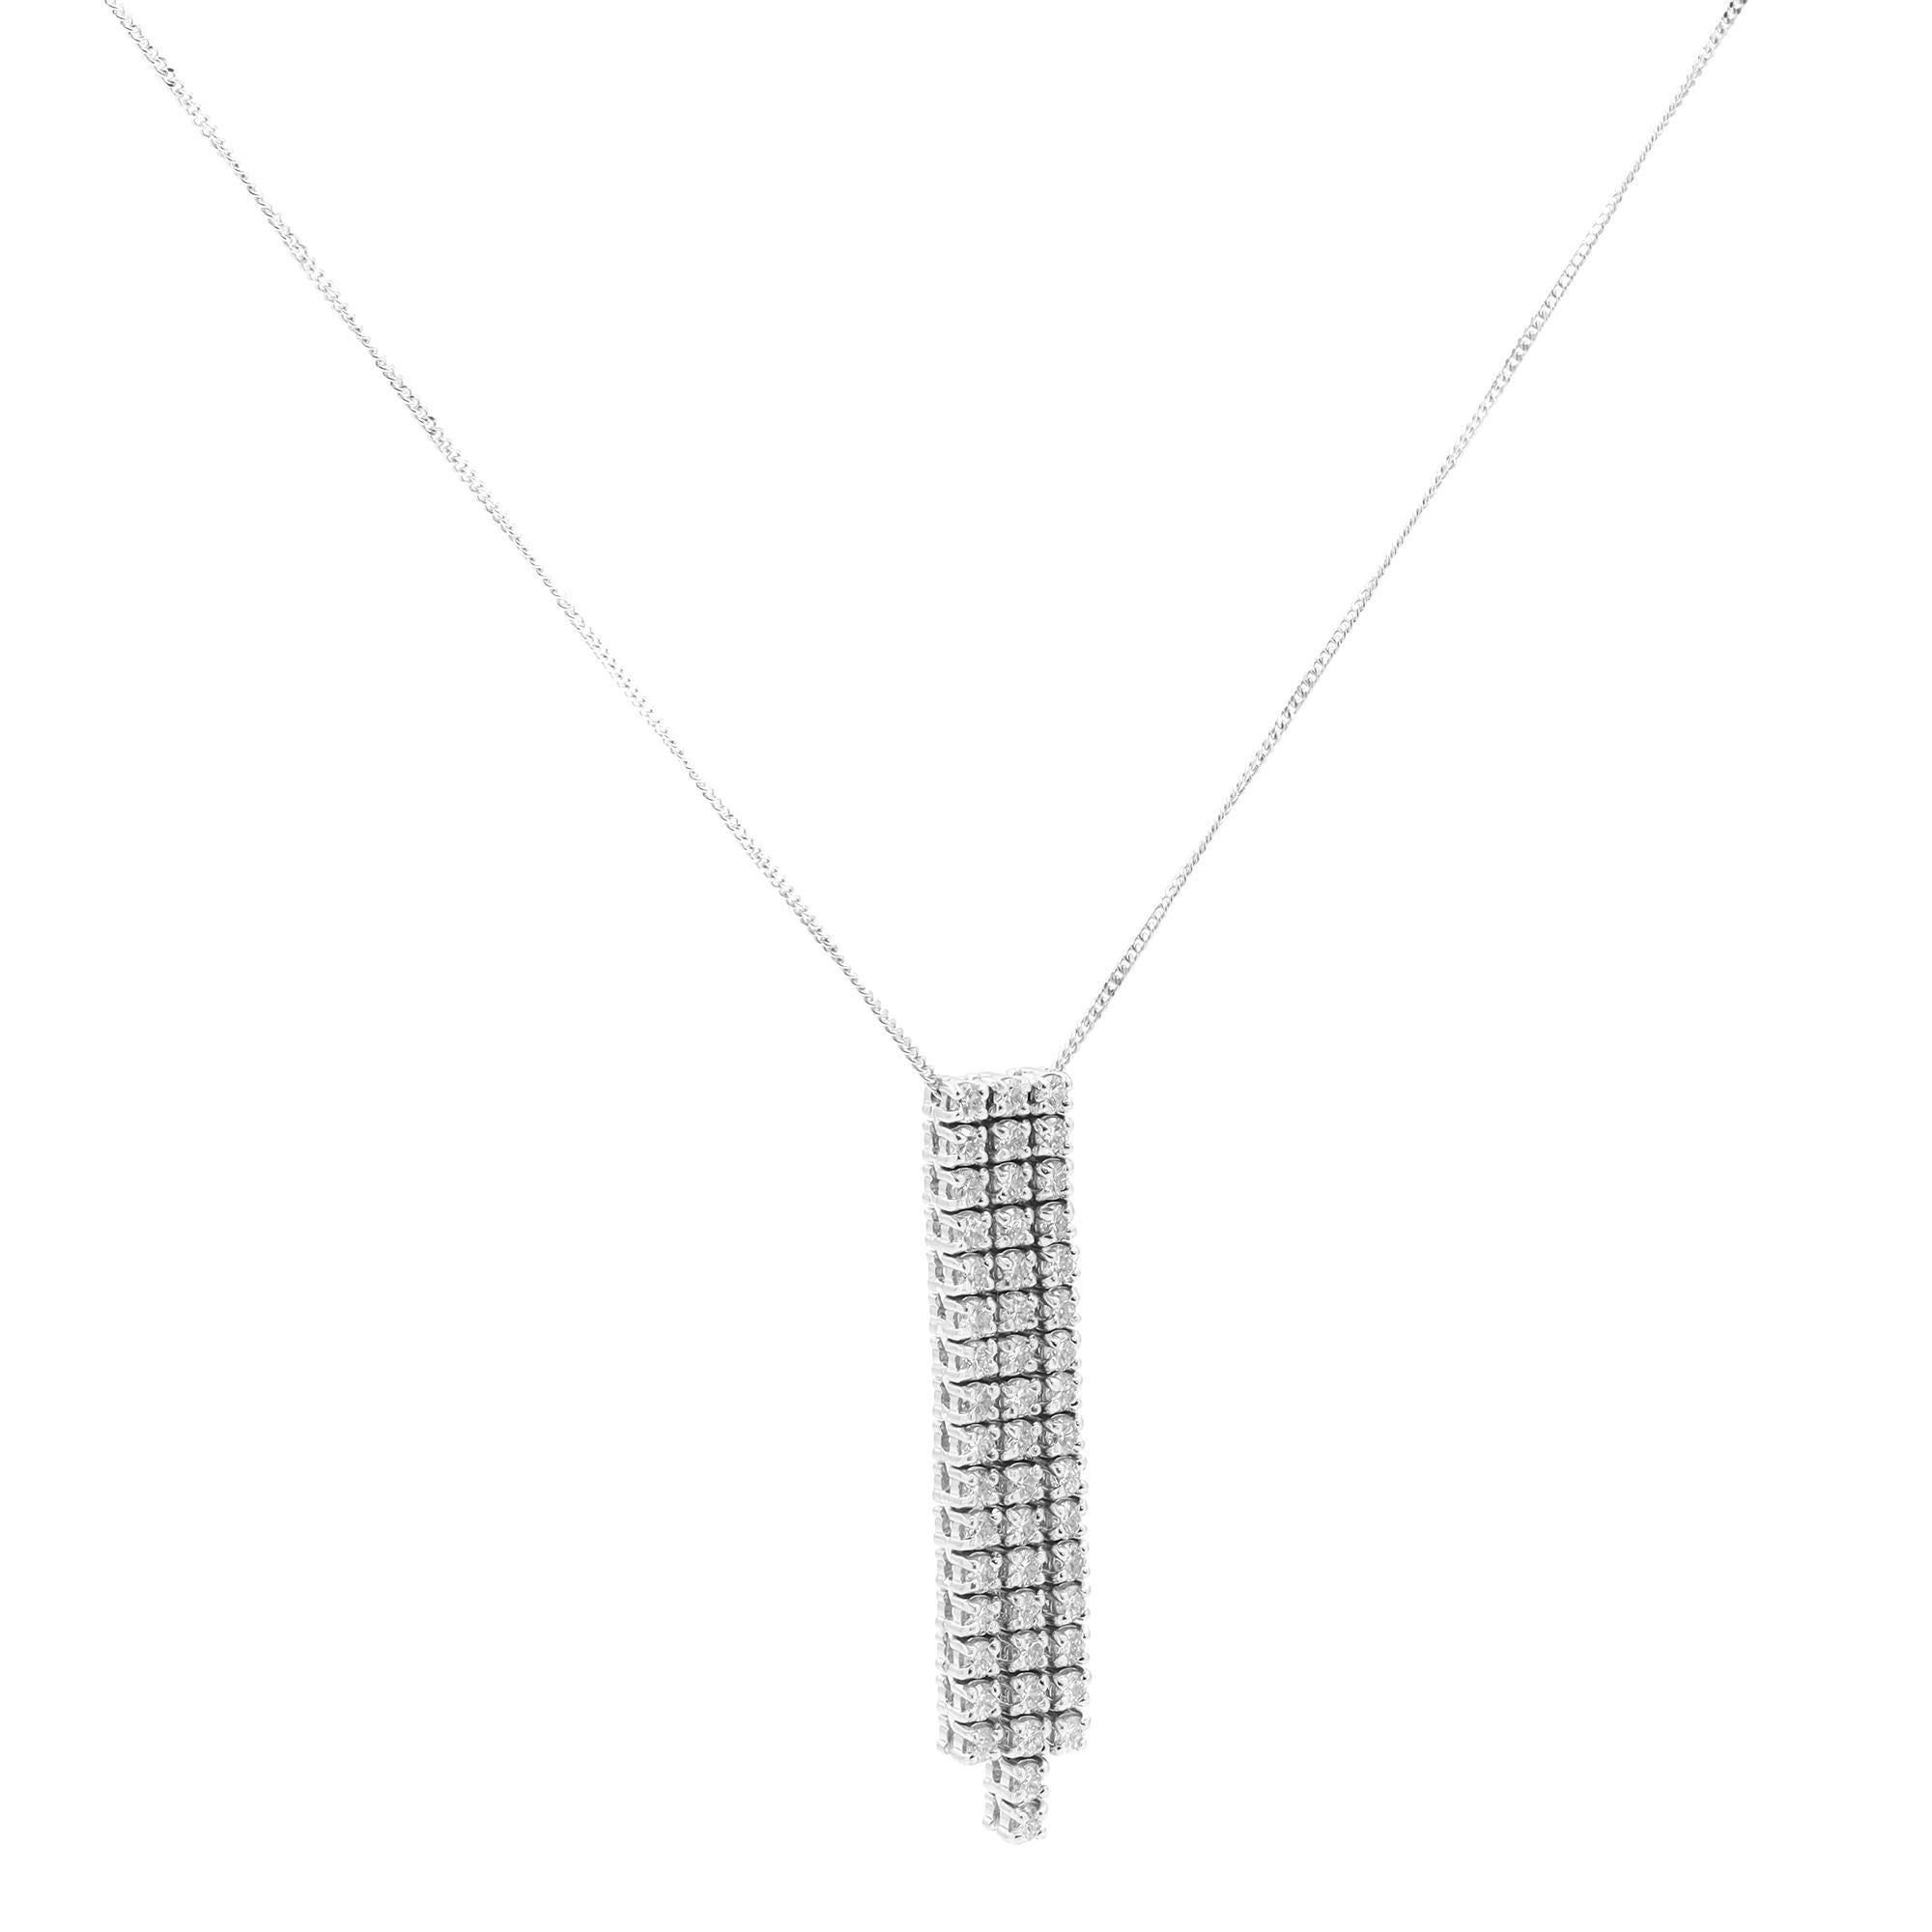 Rough Cut Piero Milano Natural Diamond Drop Pendant Necklace 18K White Gold 1.68cttw For Sale